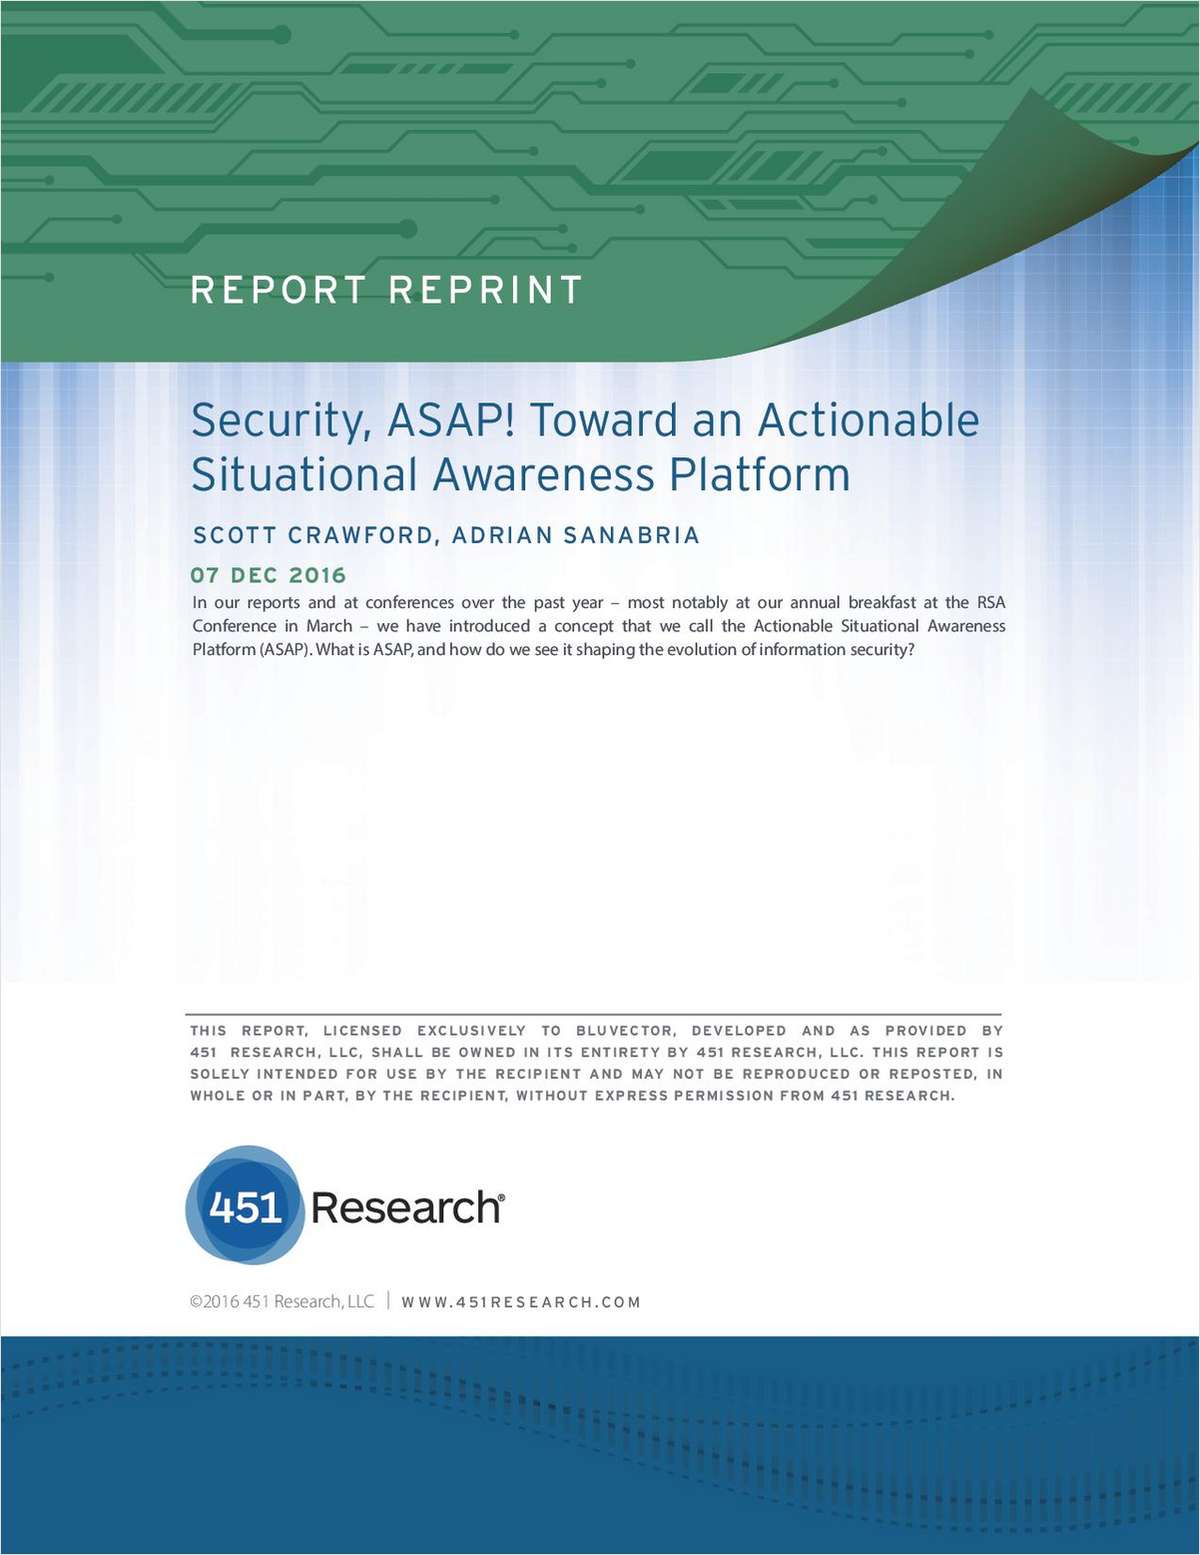 Security, ASAP! Toward an Actionable Situational Awareness Platform